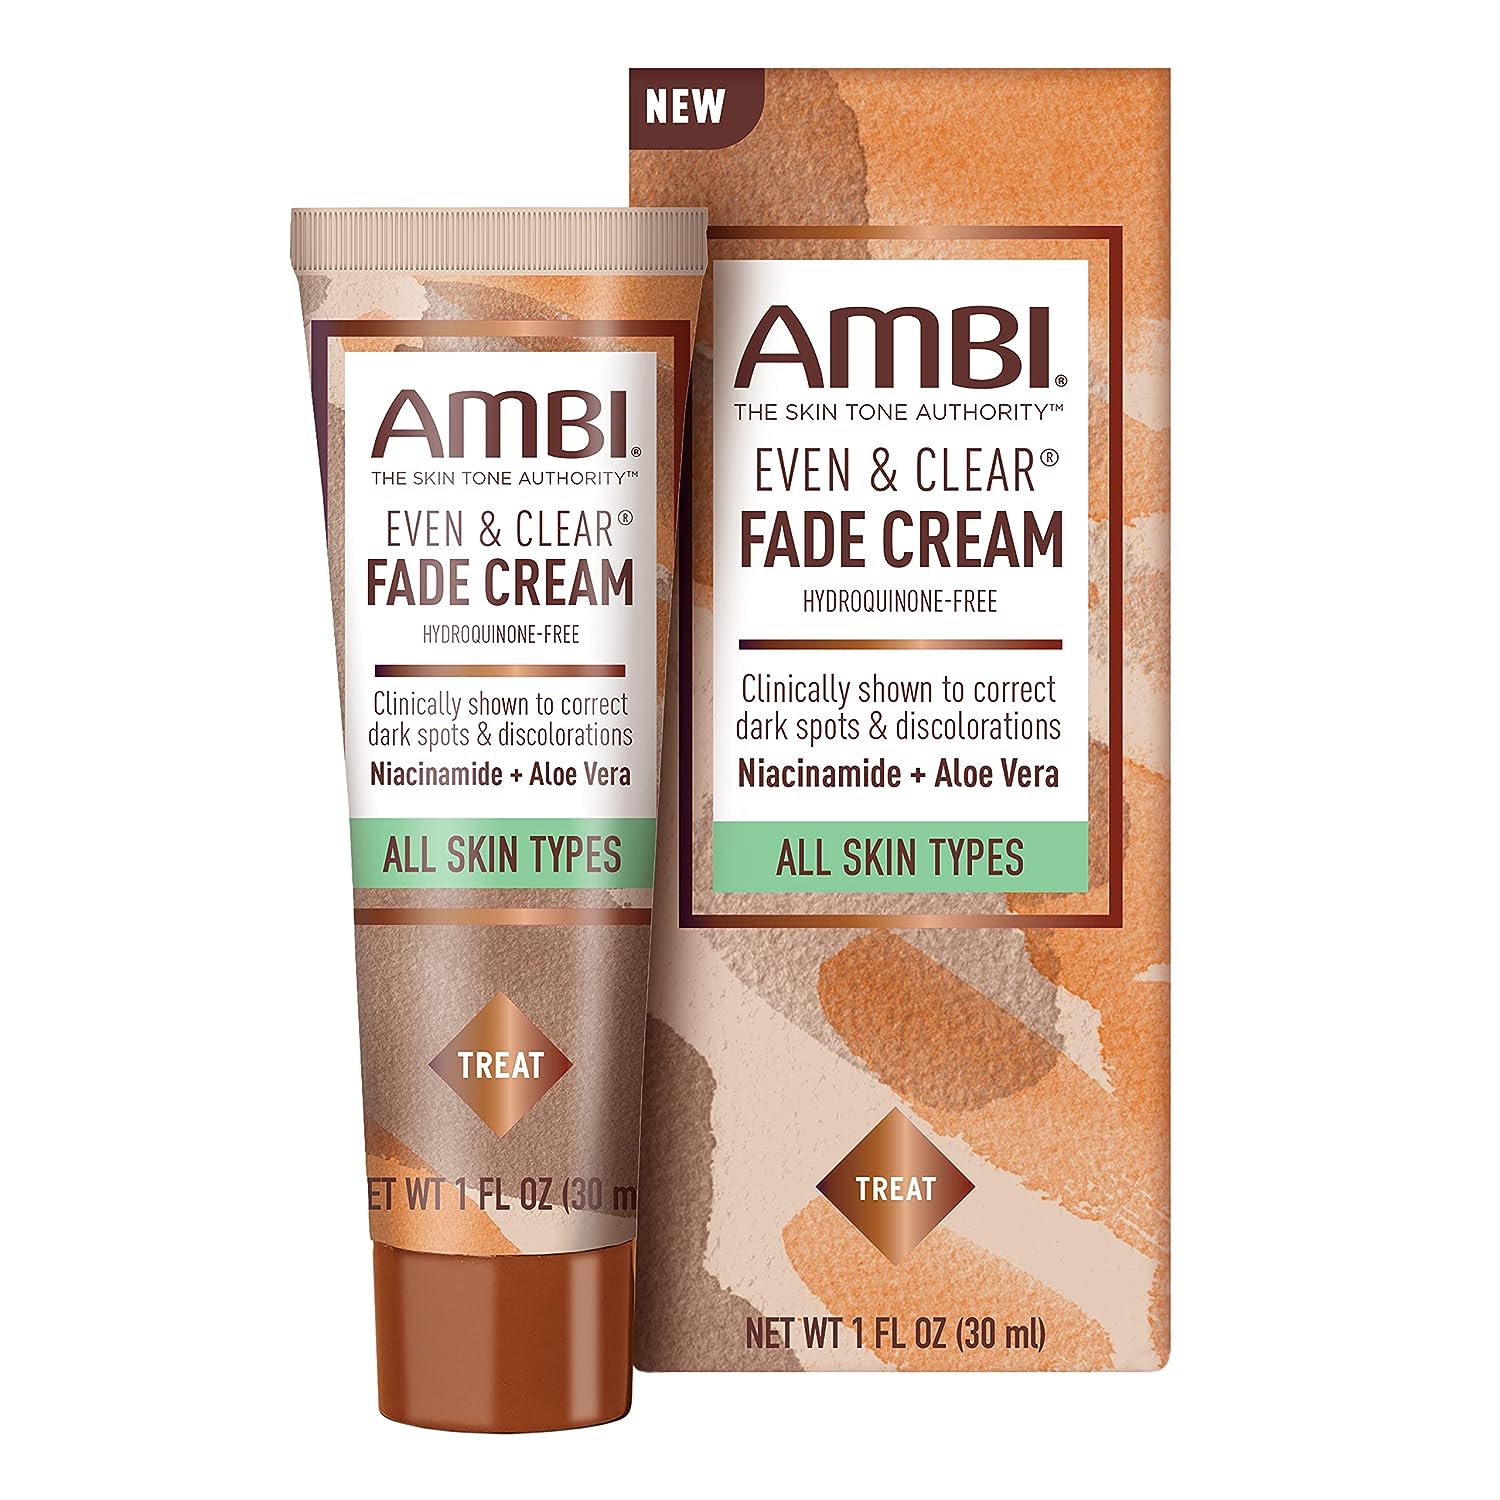 Ambi Even & Clear Fade Cream, Hydroq…